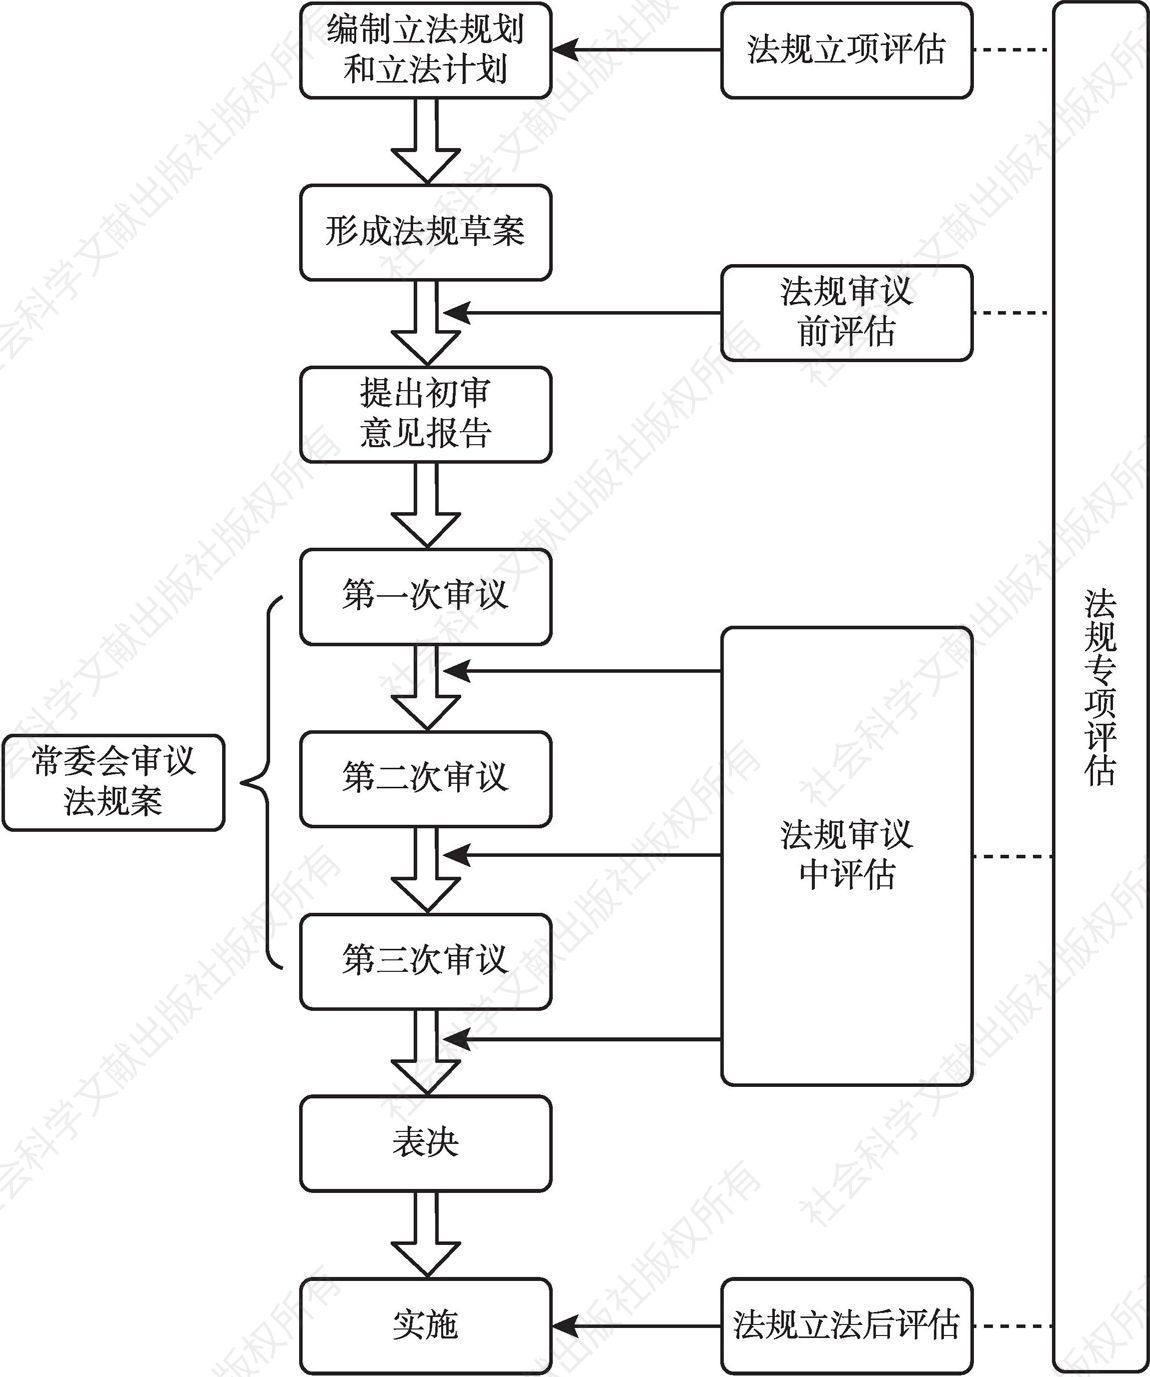 图1 深圳制定法规流程及对应立法评估类型